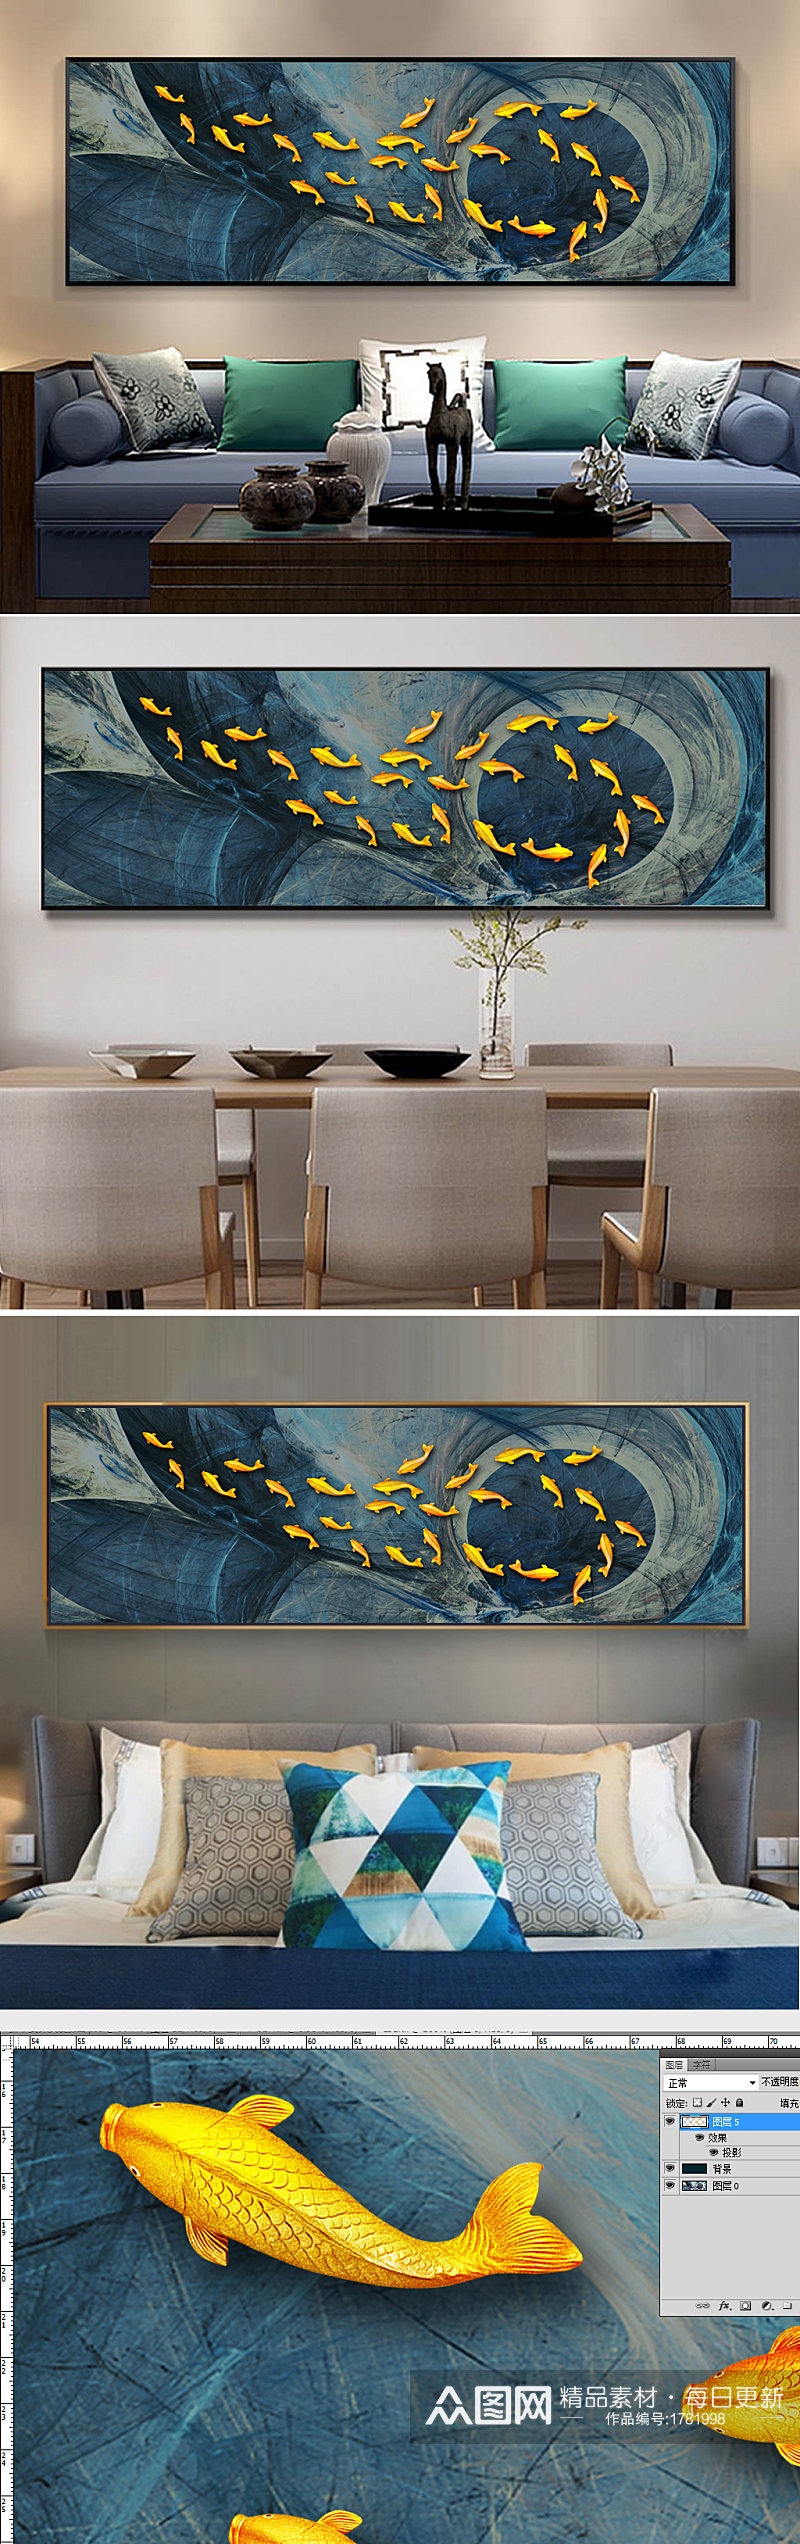 新中式禅意抽象金色鱼群床头装饰画素材